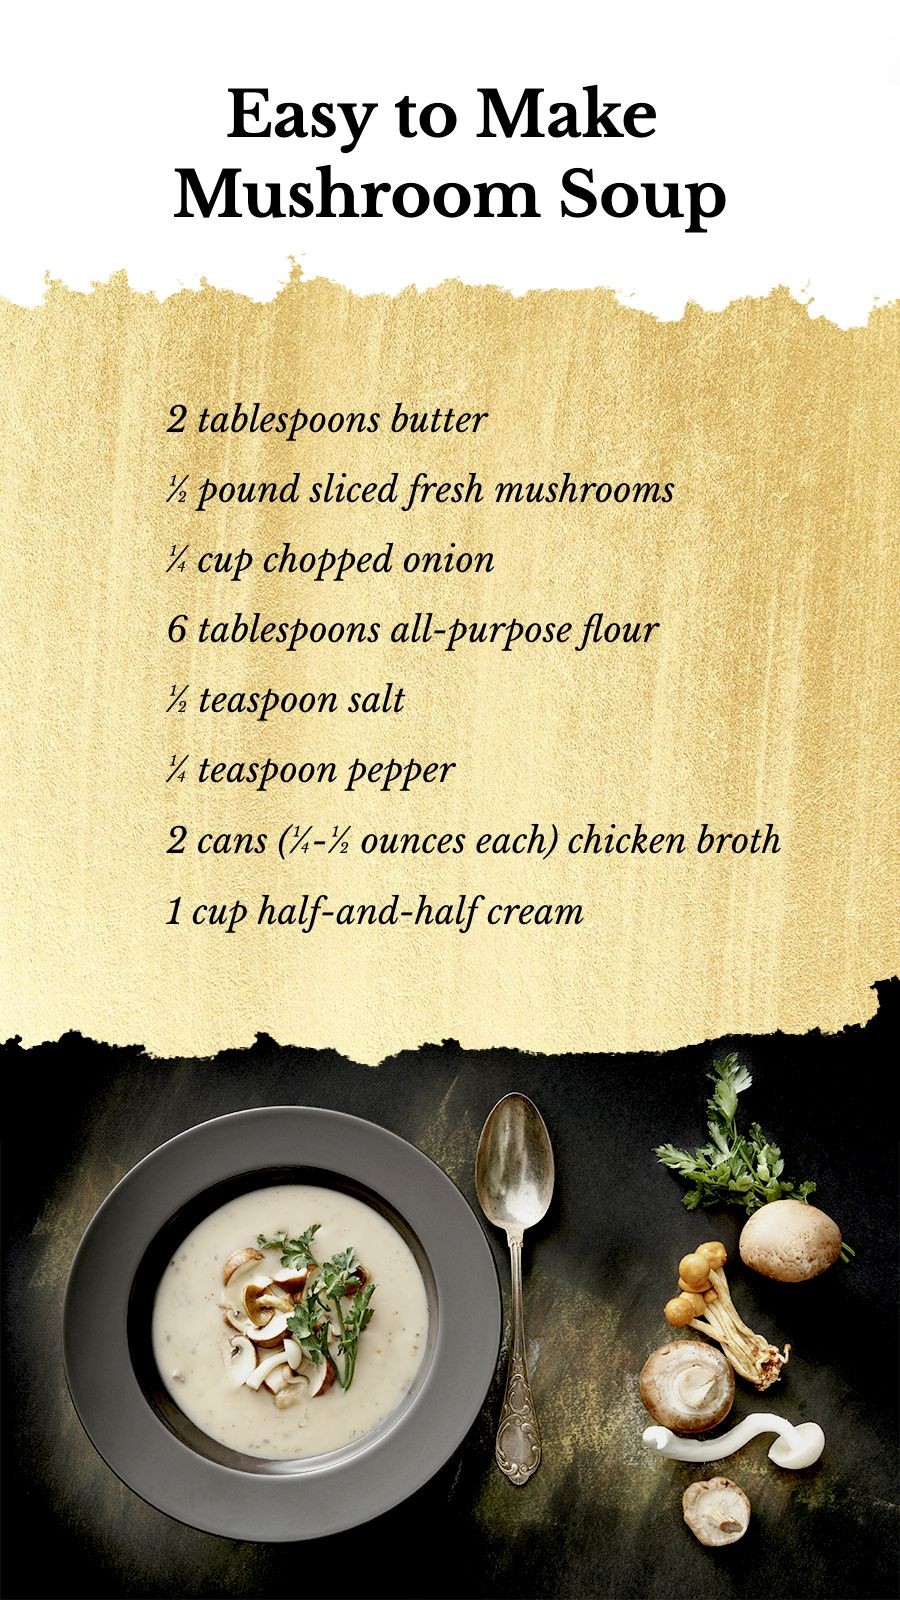 Luxury Mushroom Soup Menu Display Instagram Story预览效果